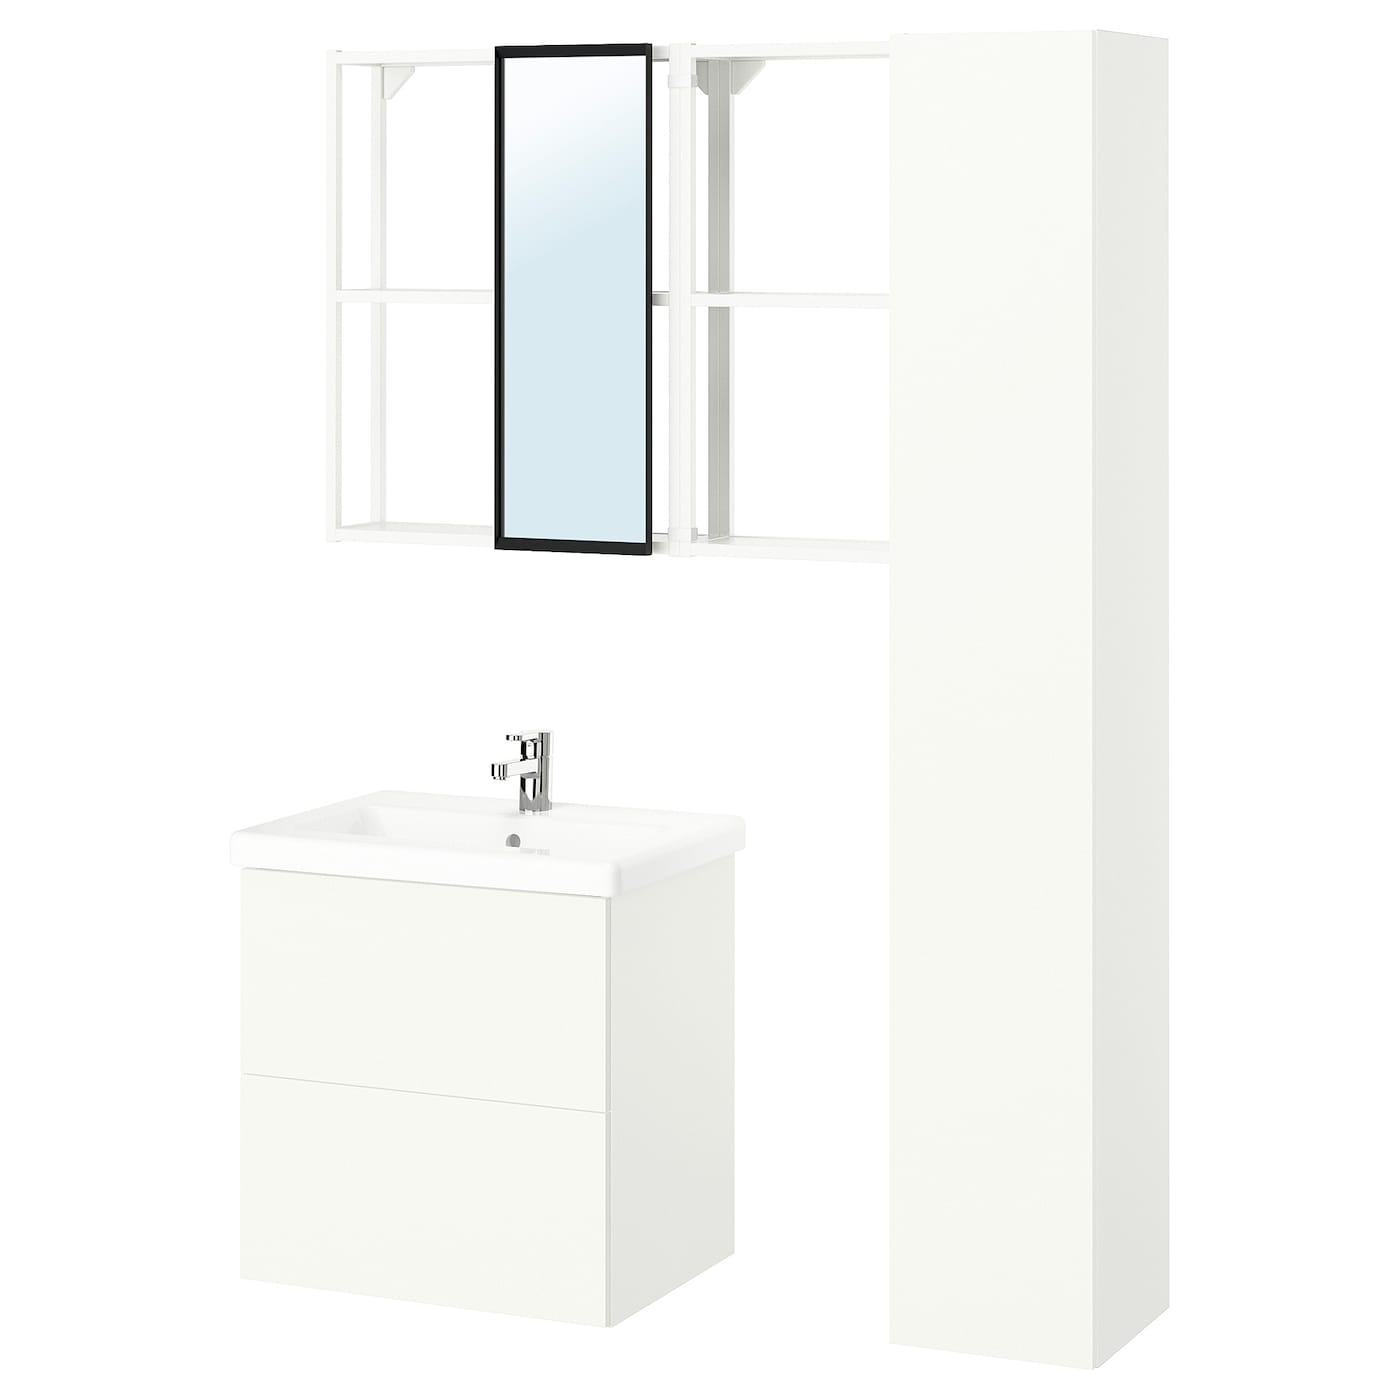 Комбинация для ванной - IKEA ENHET, 64х43х65 см, белый, ЭНХЕТ ИКЕА